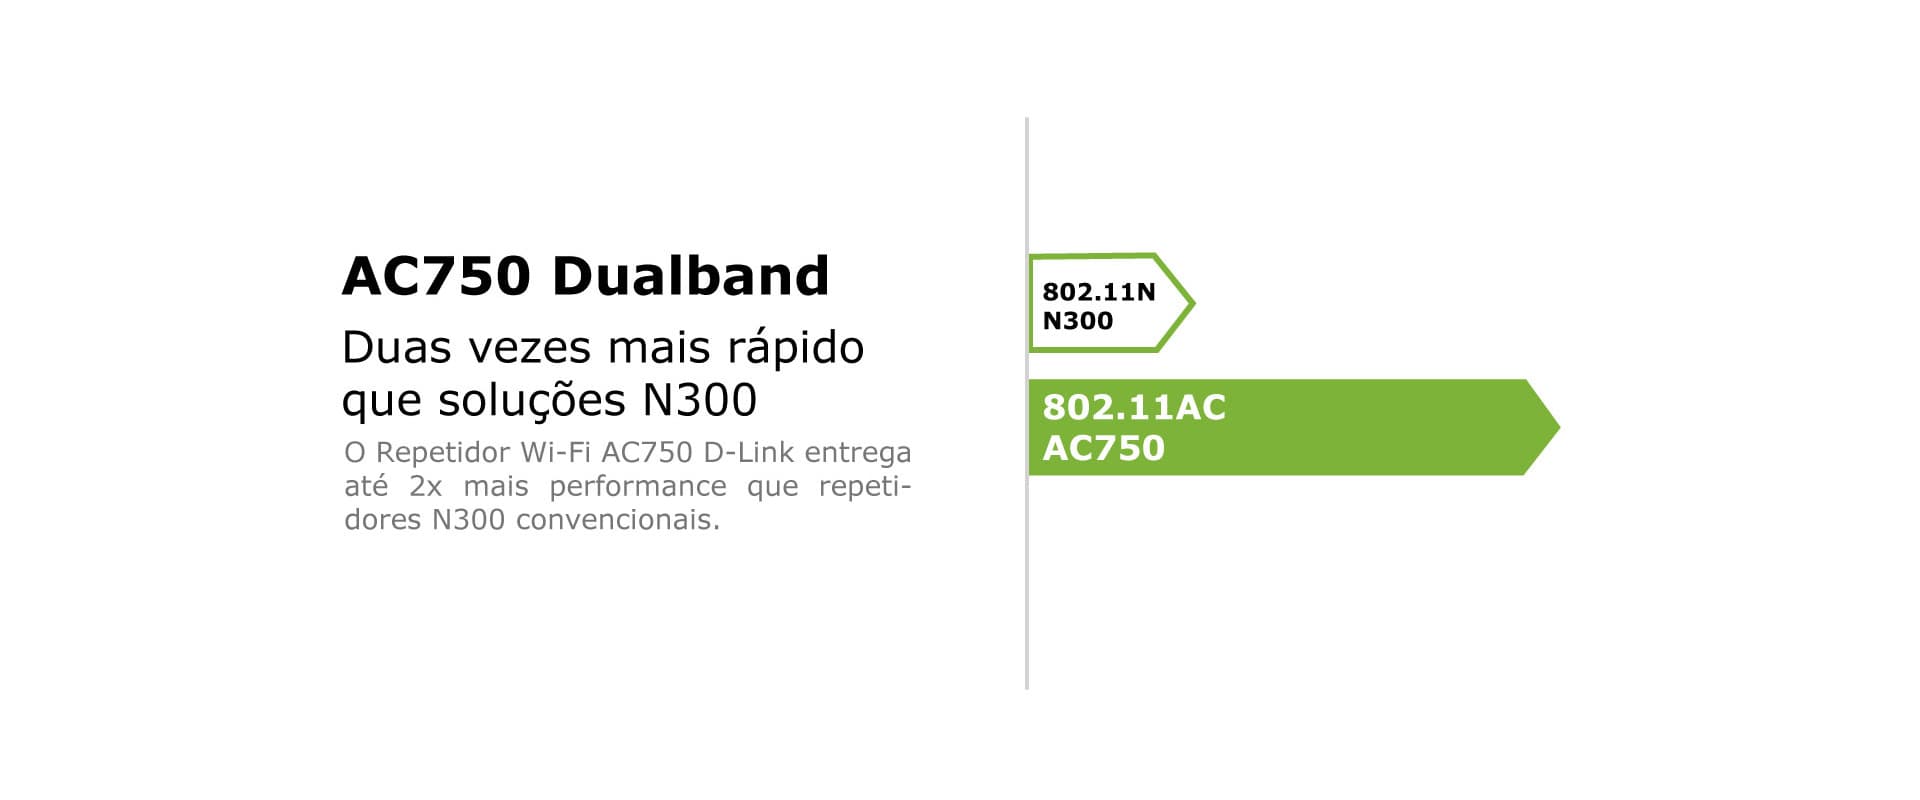 Repetidor AC750 DuaBand até duas vezes mais rápido que N300